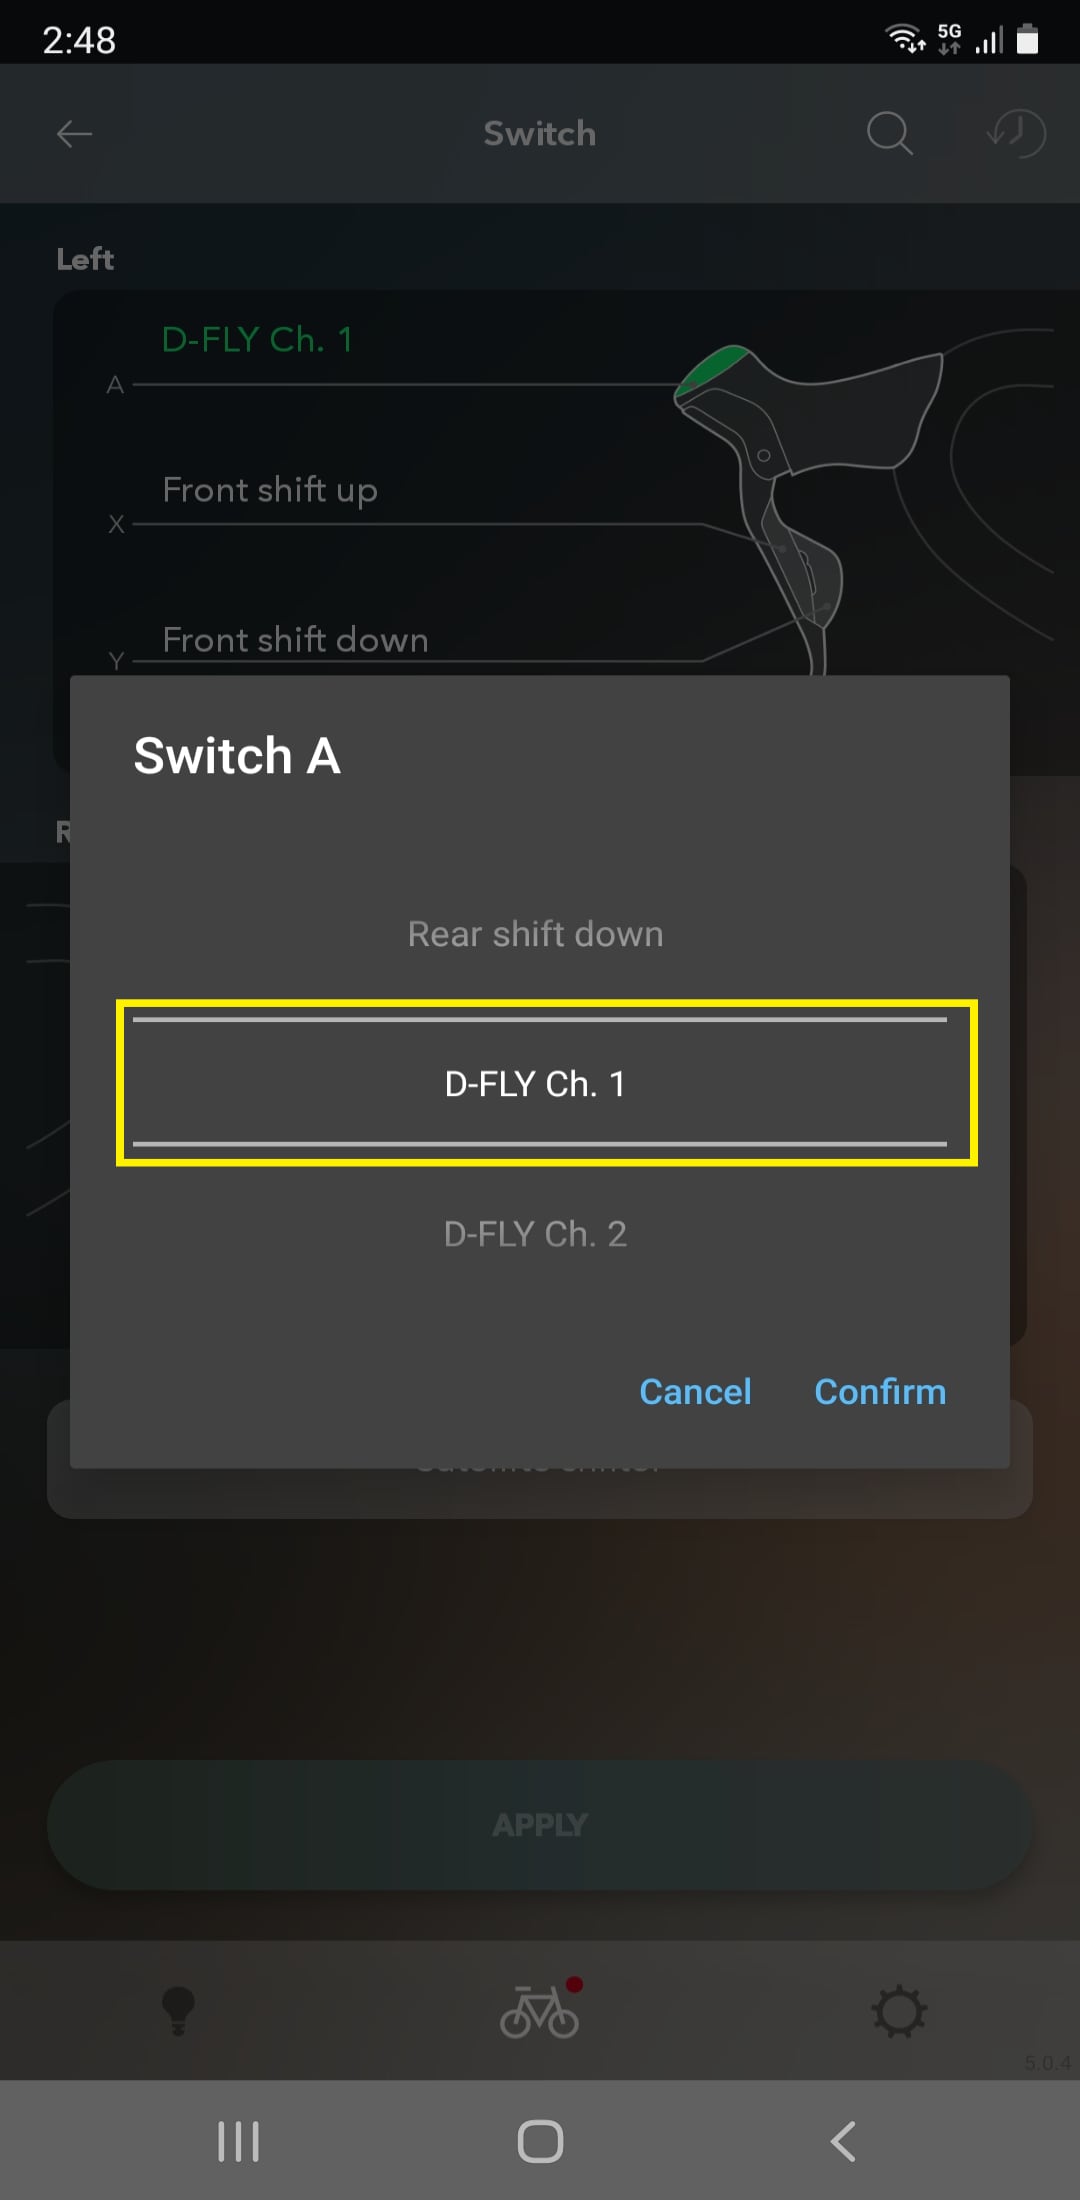 Selecteer een D-FLY-kanaal van 1 tot 4.